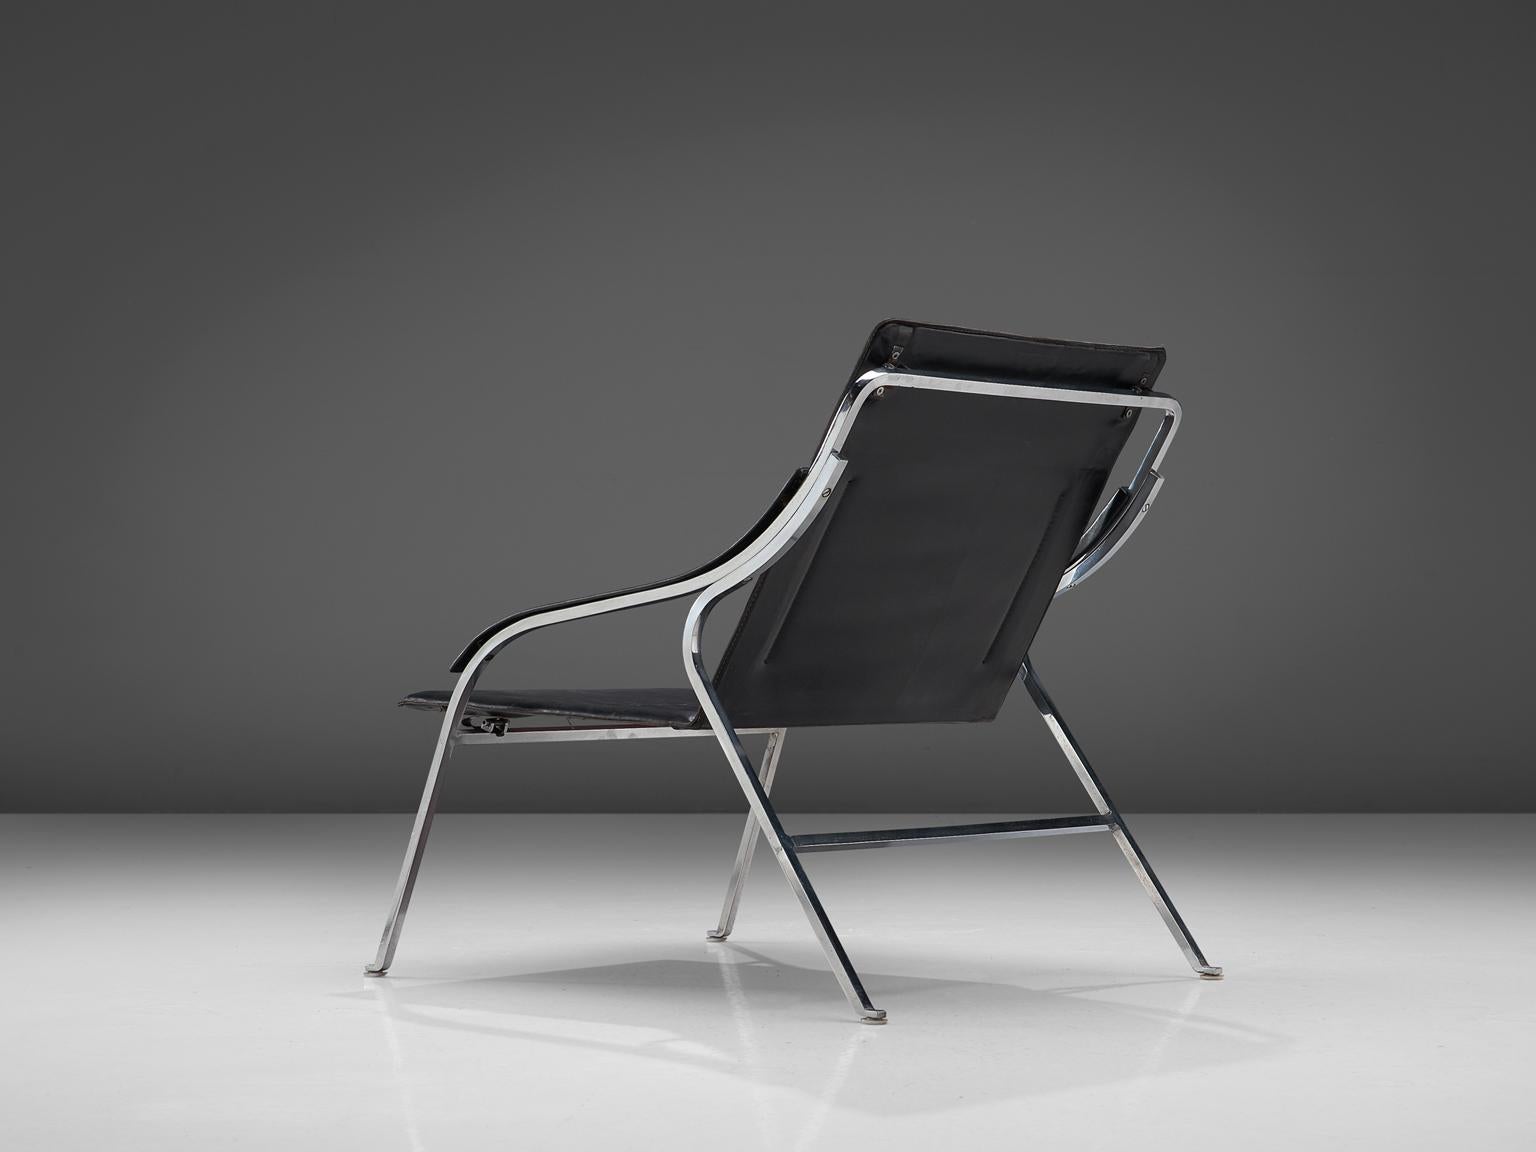 Marco Zanuso für Arflex, Leder und verchromter Stahl, Italien, 1964.

Dieser Loungesessel von Zanuso gehört zu den besten Beispielen für Sessel, die der Architekt entworfen hat. Es ist nicht nur das raffinierte, schlanke Design, das es auszeichnet,